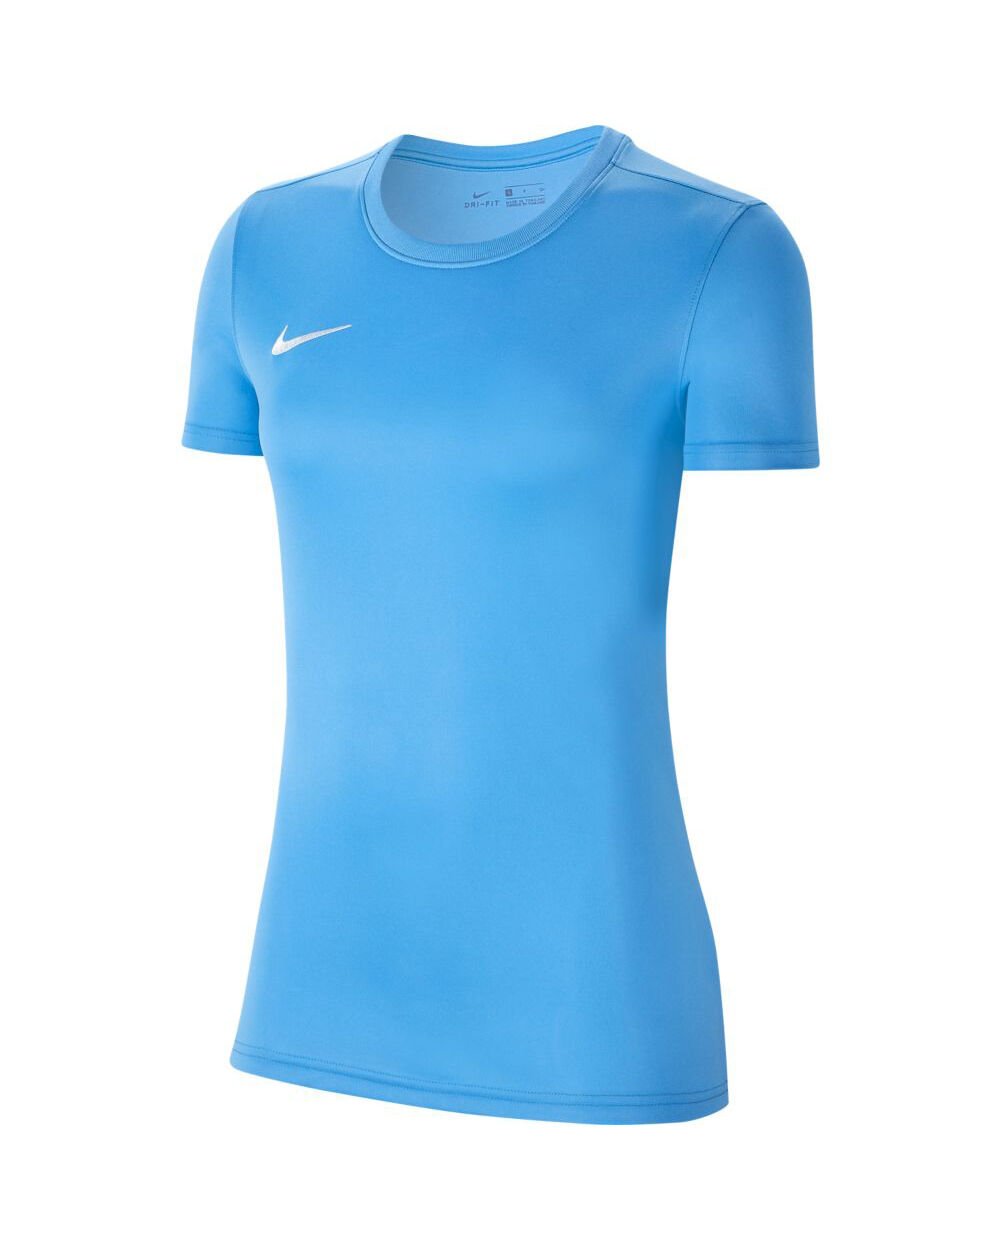 Camiseta Nike Park VII Azul Cielo para Mujeres - BV6728-412